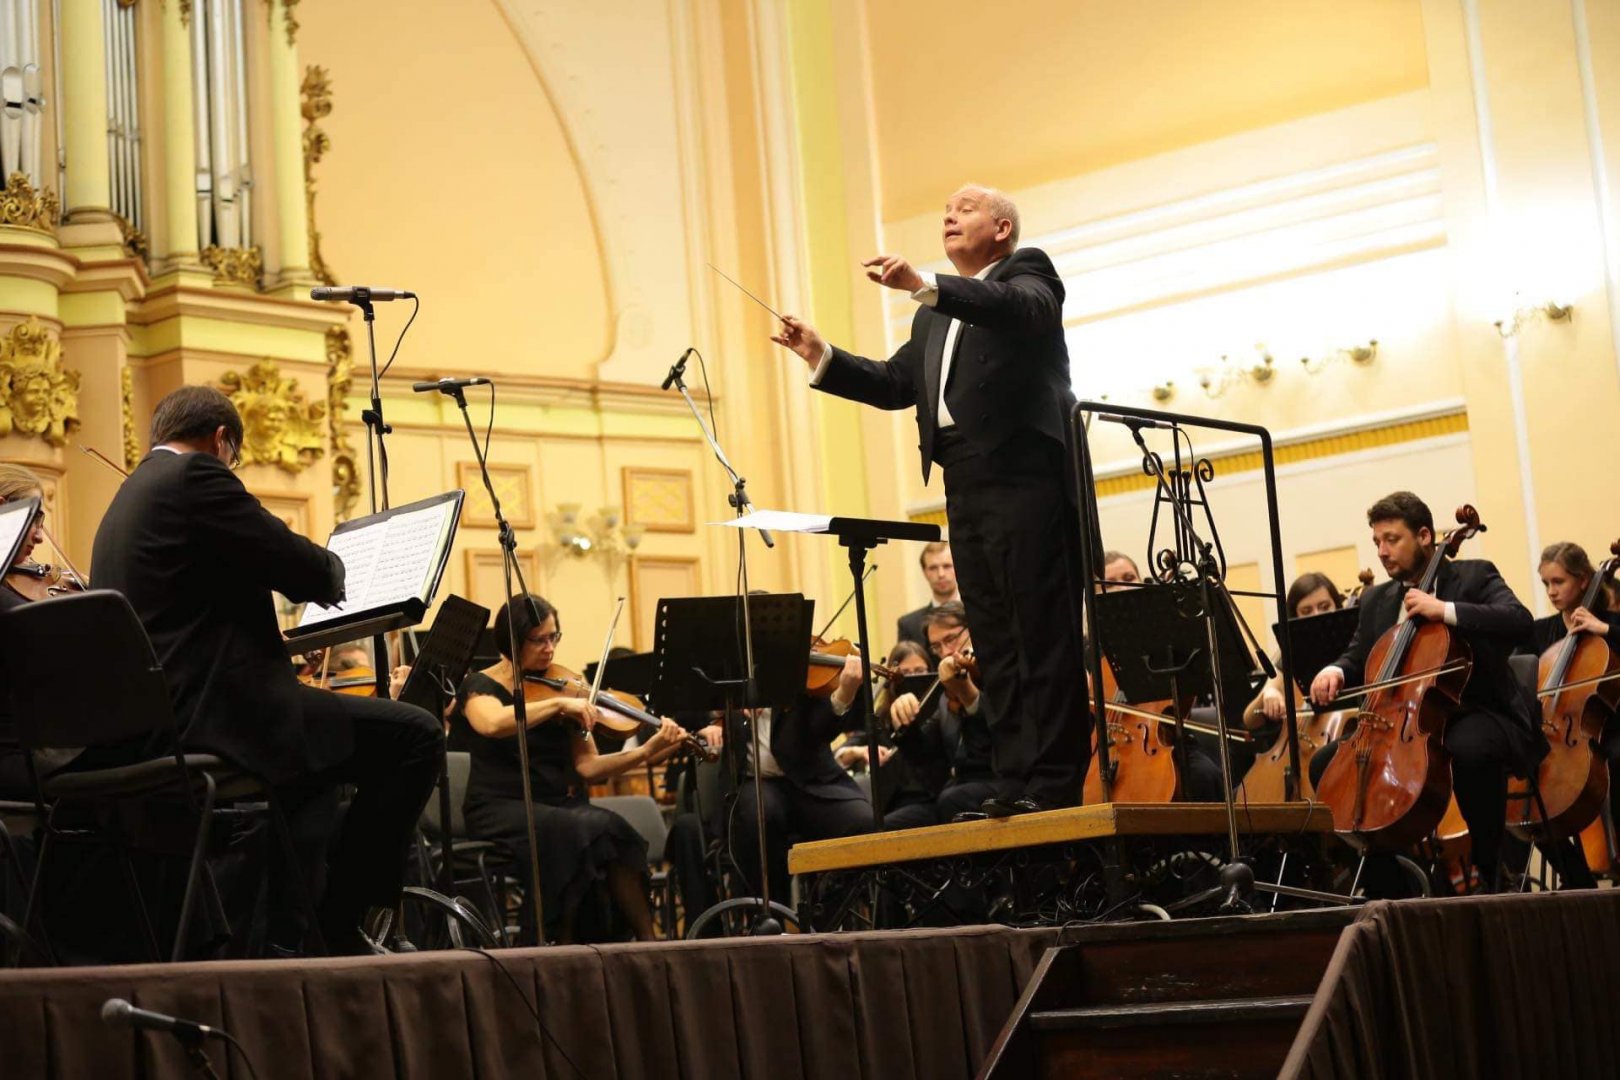 Львівська національна філармонія - Академічний симфонічний оркестр Львівської філармонії відзначив своє 120-річчя!